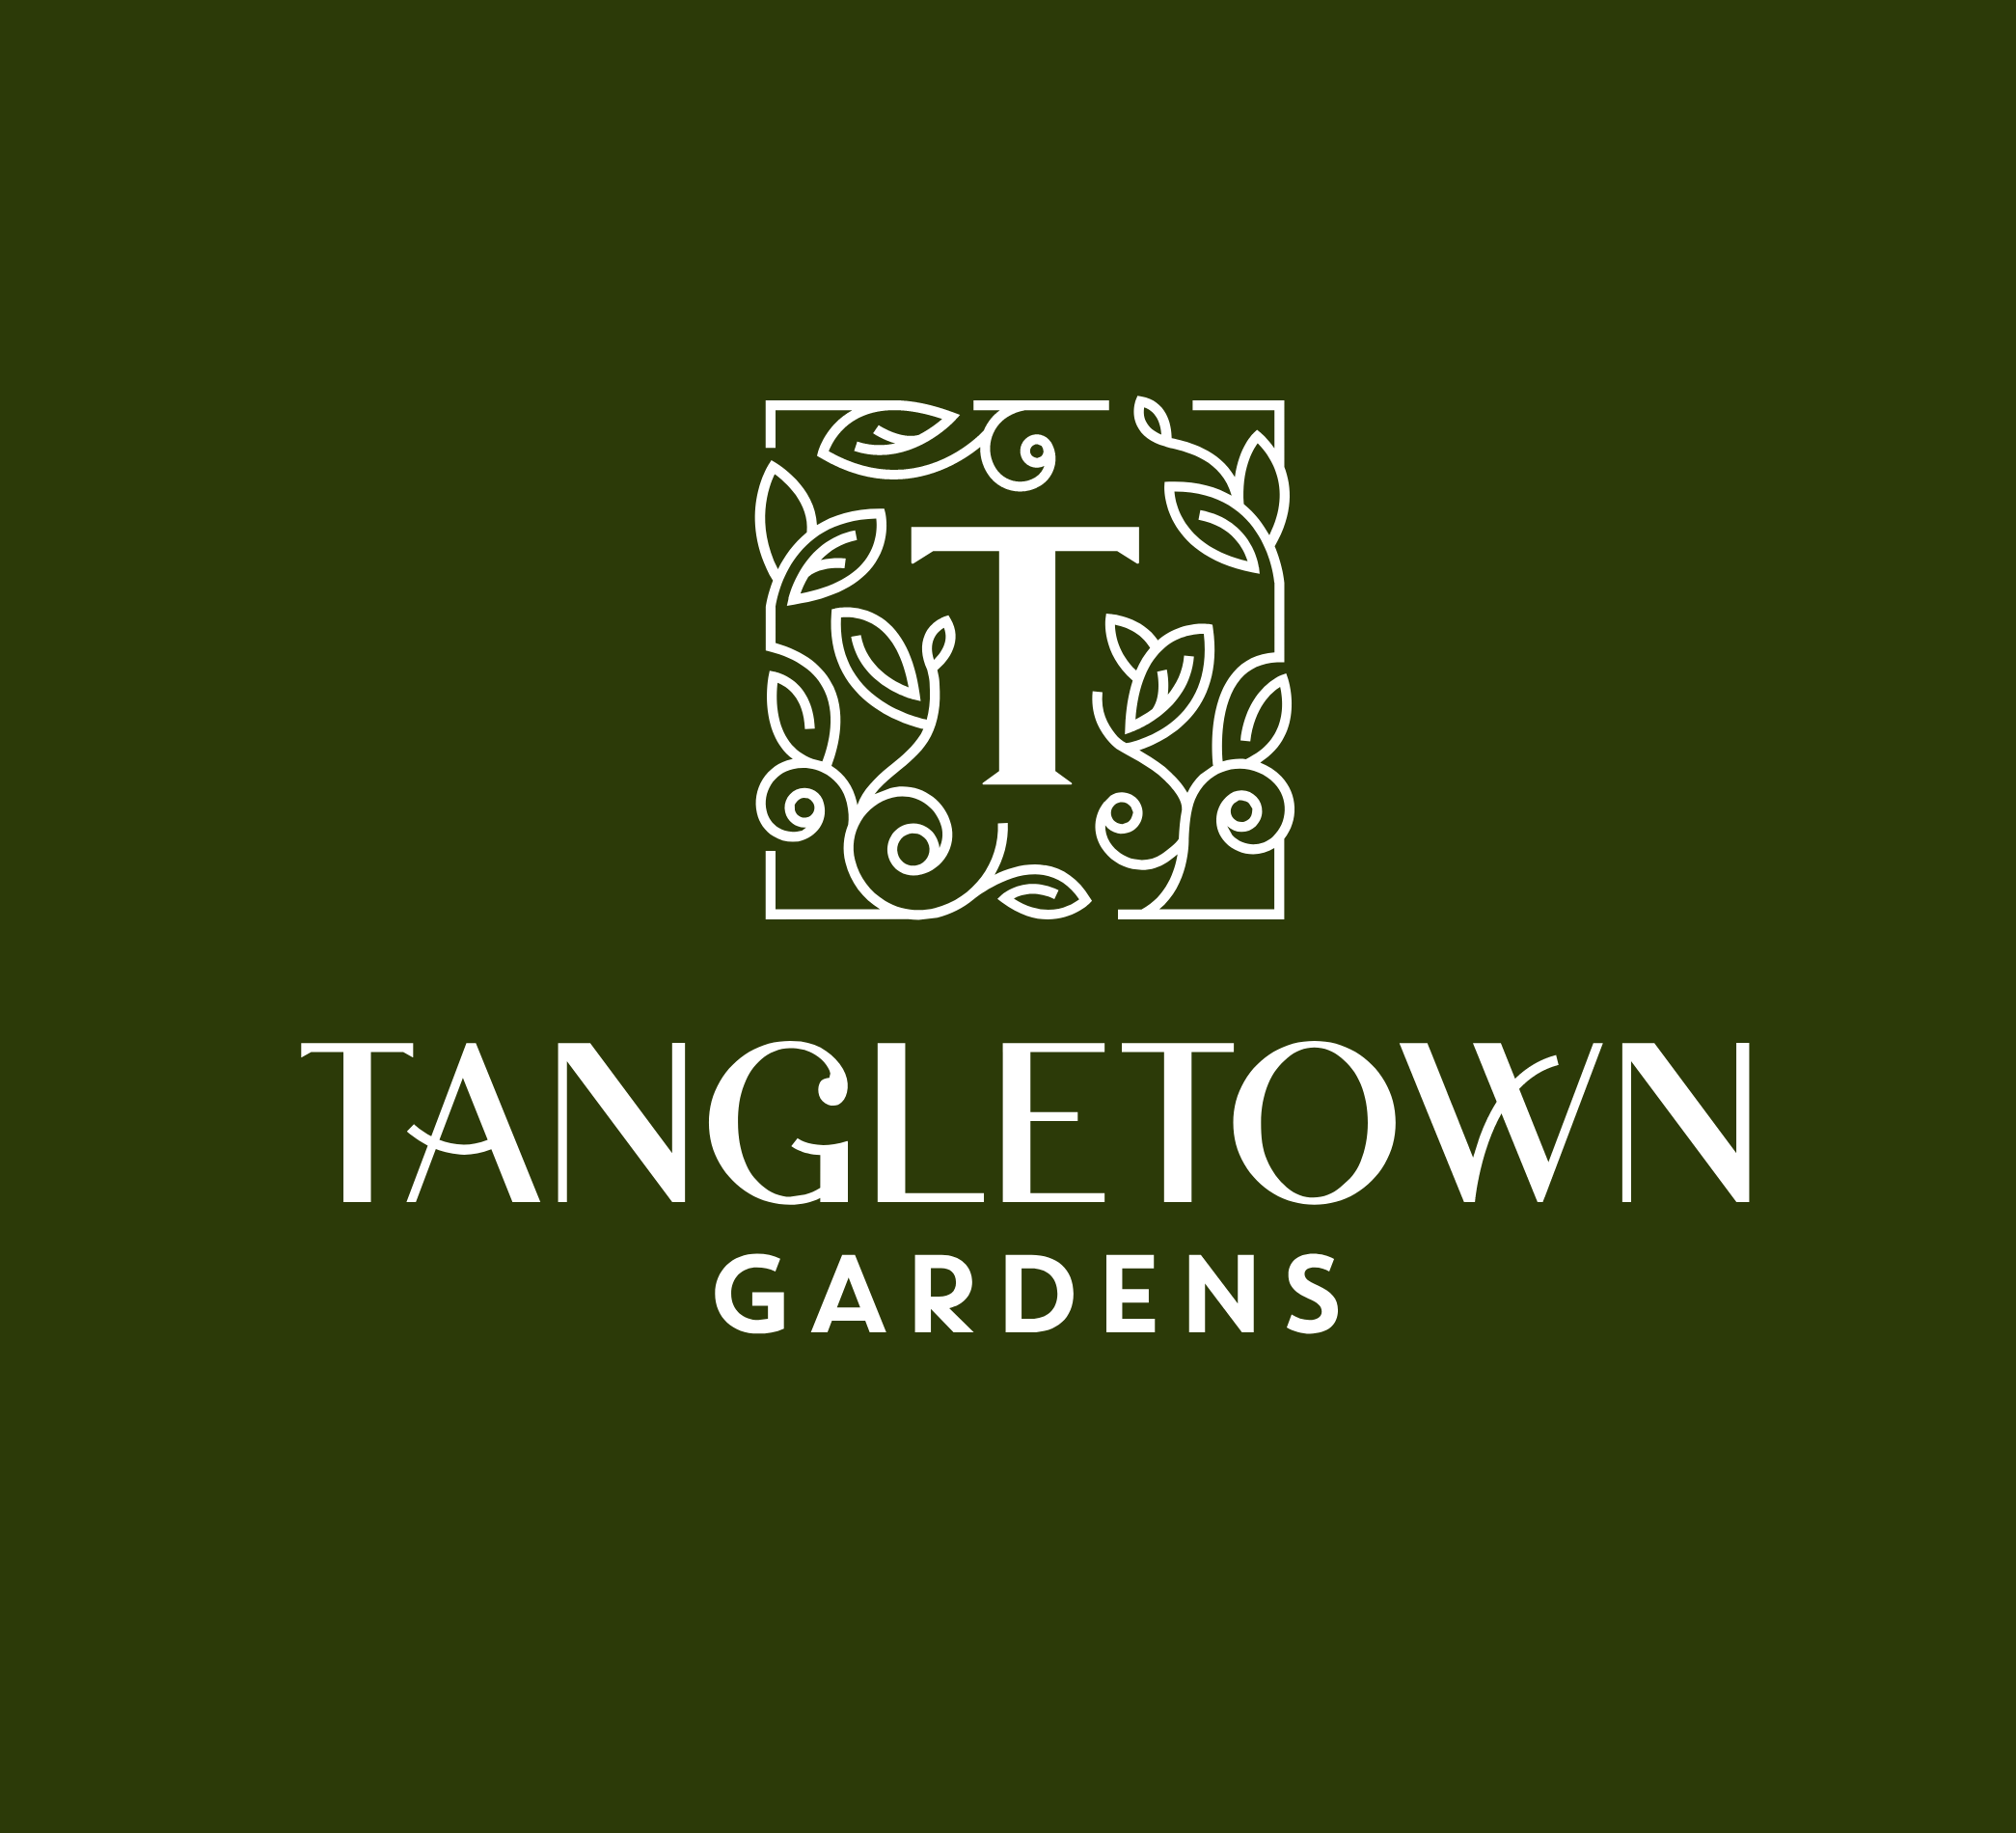 Tangletown Gardens – Plato